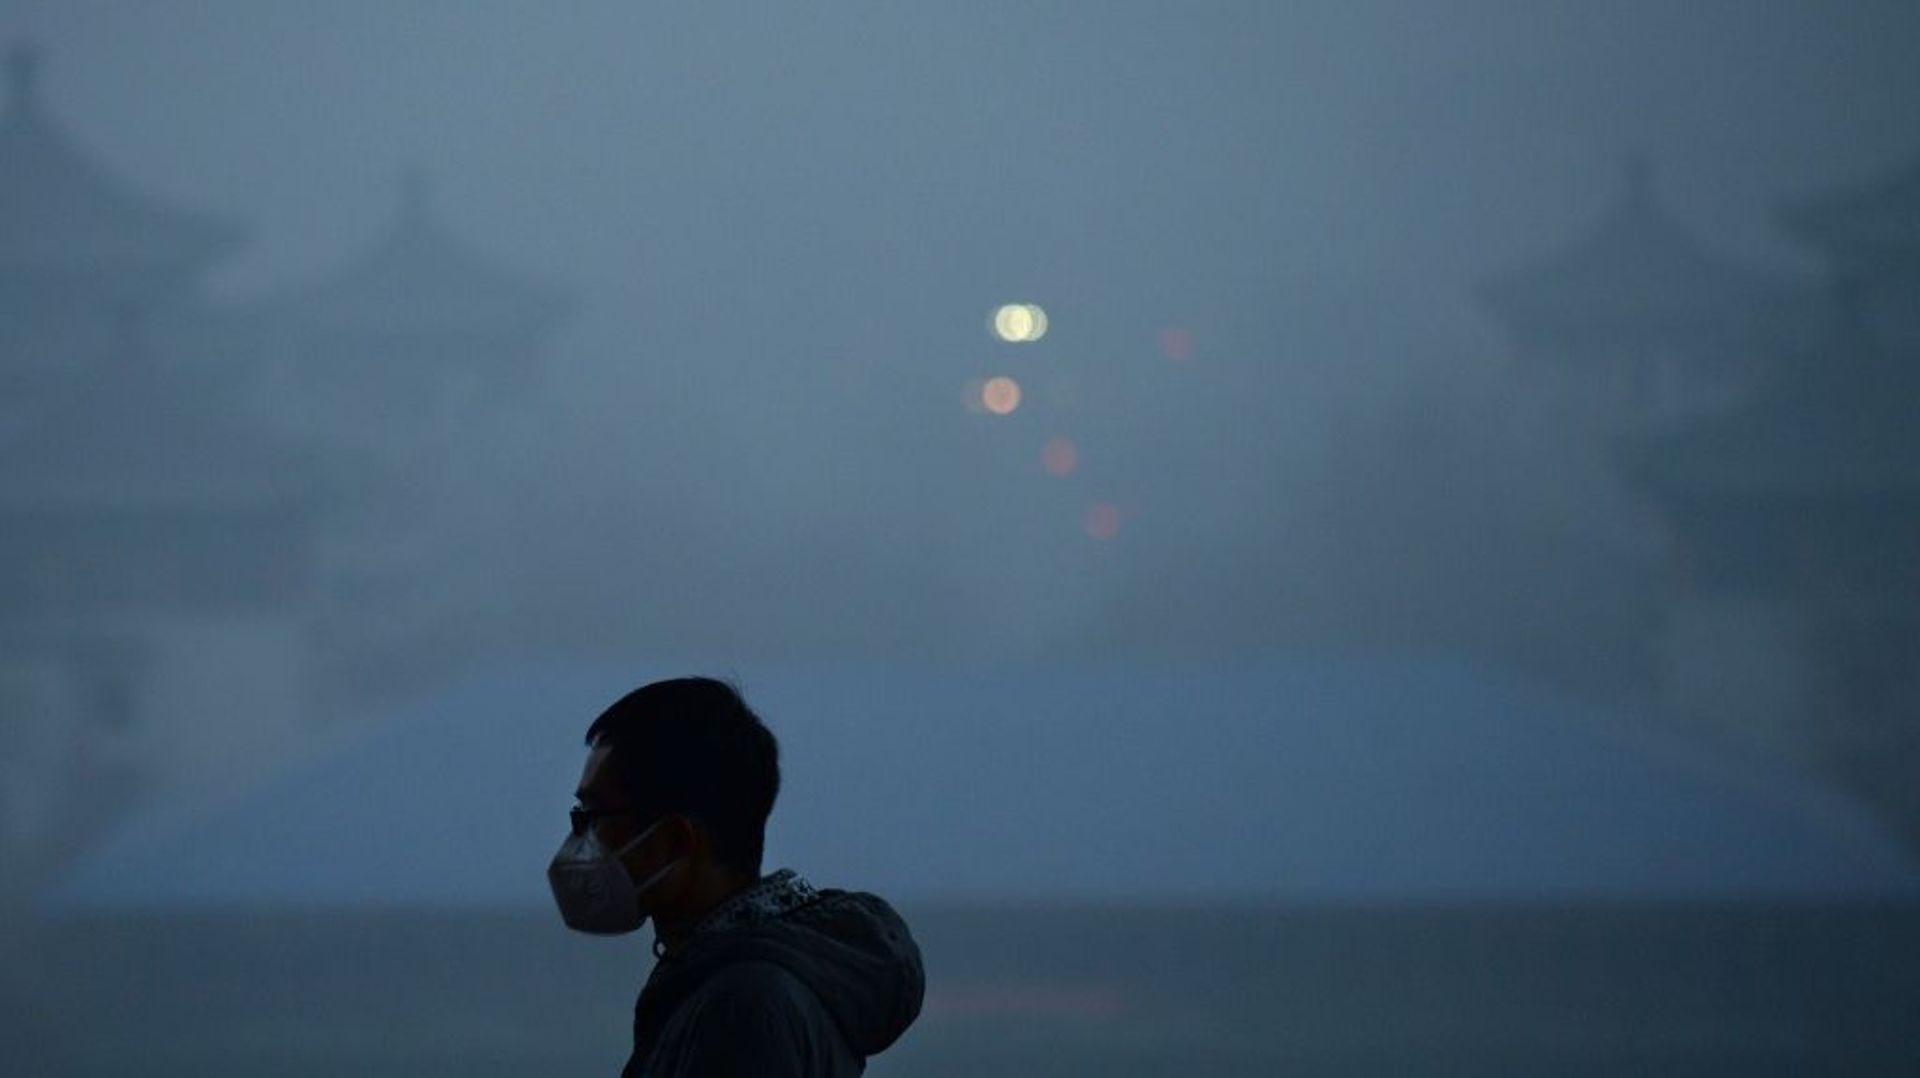 Un homme porte un masque contre la pollution le 20 décembre 2016 à Pékin